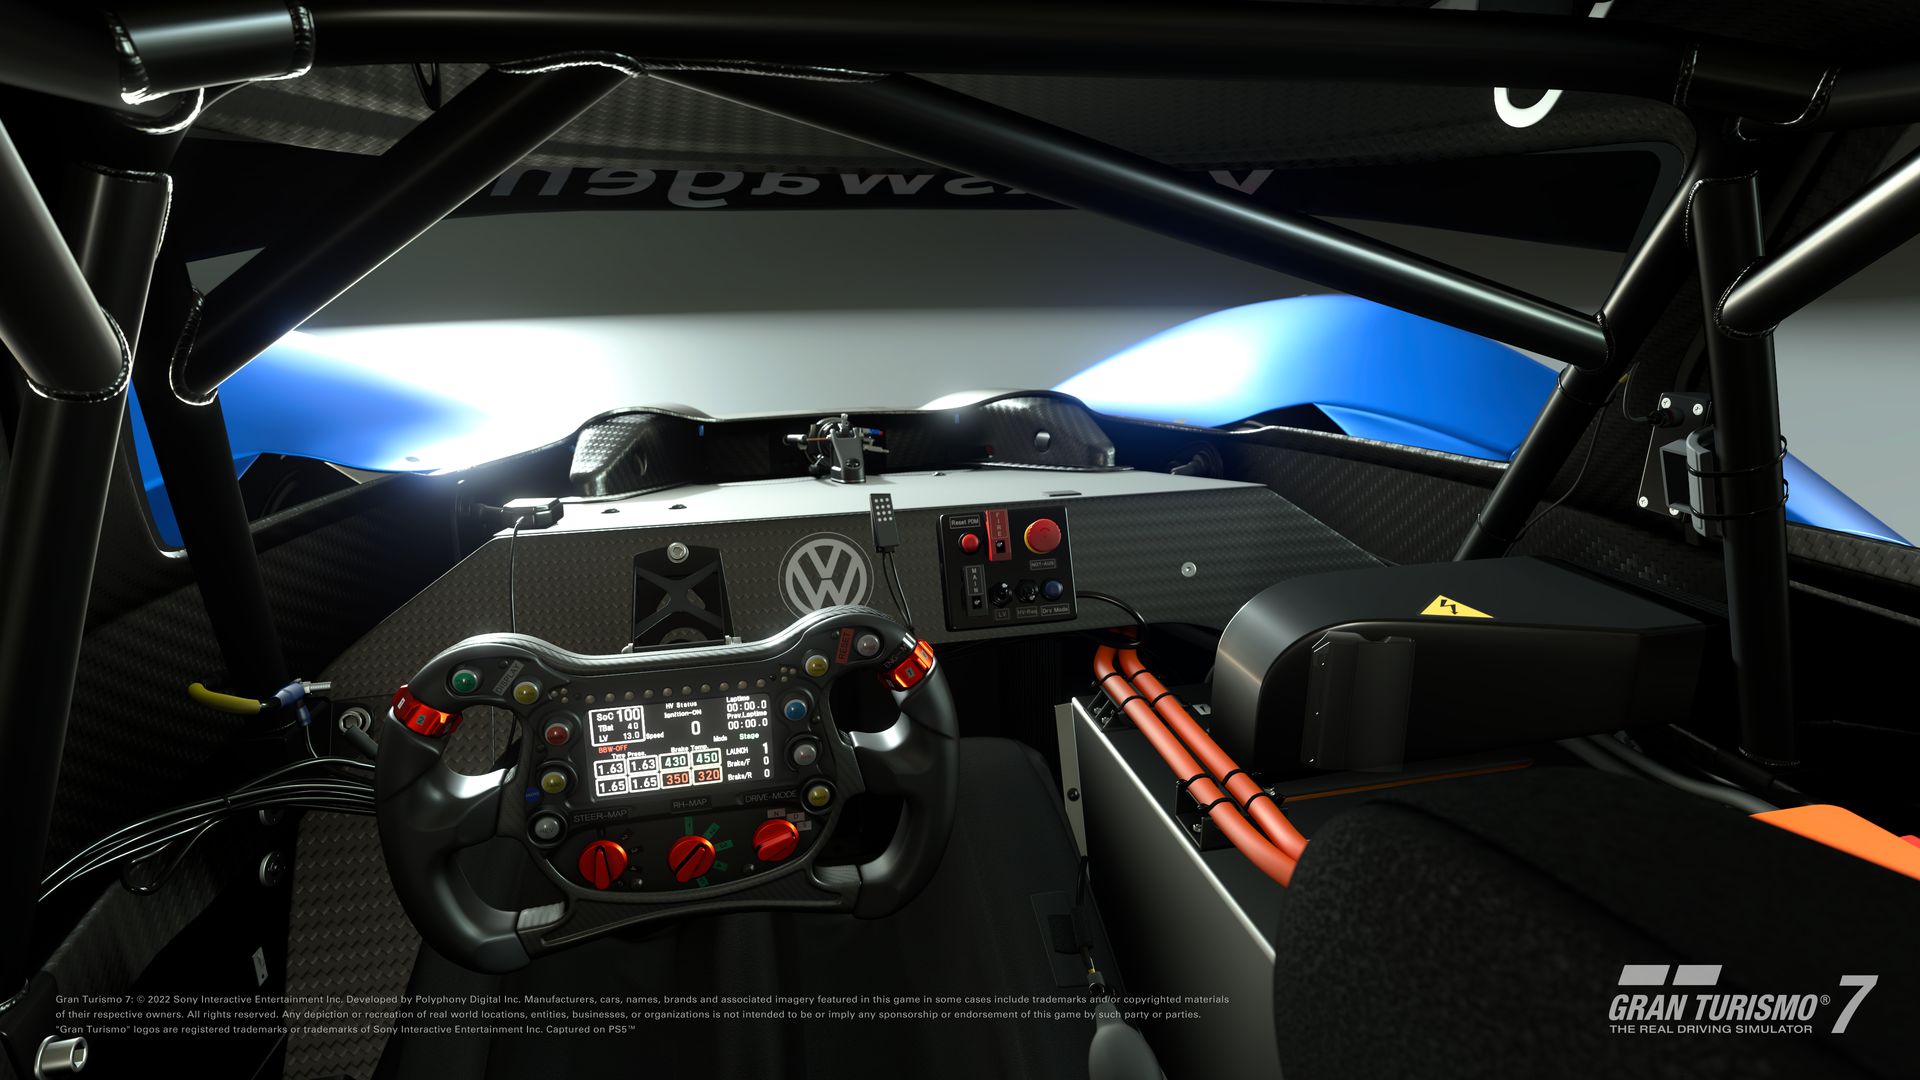 Gran Turismo 7 recebe atualização 1.23 que inclui três novos